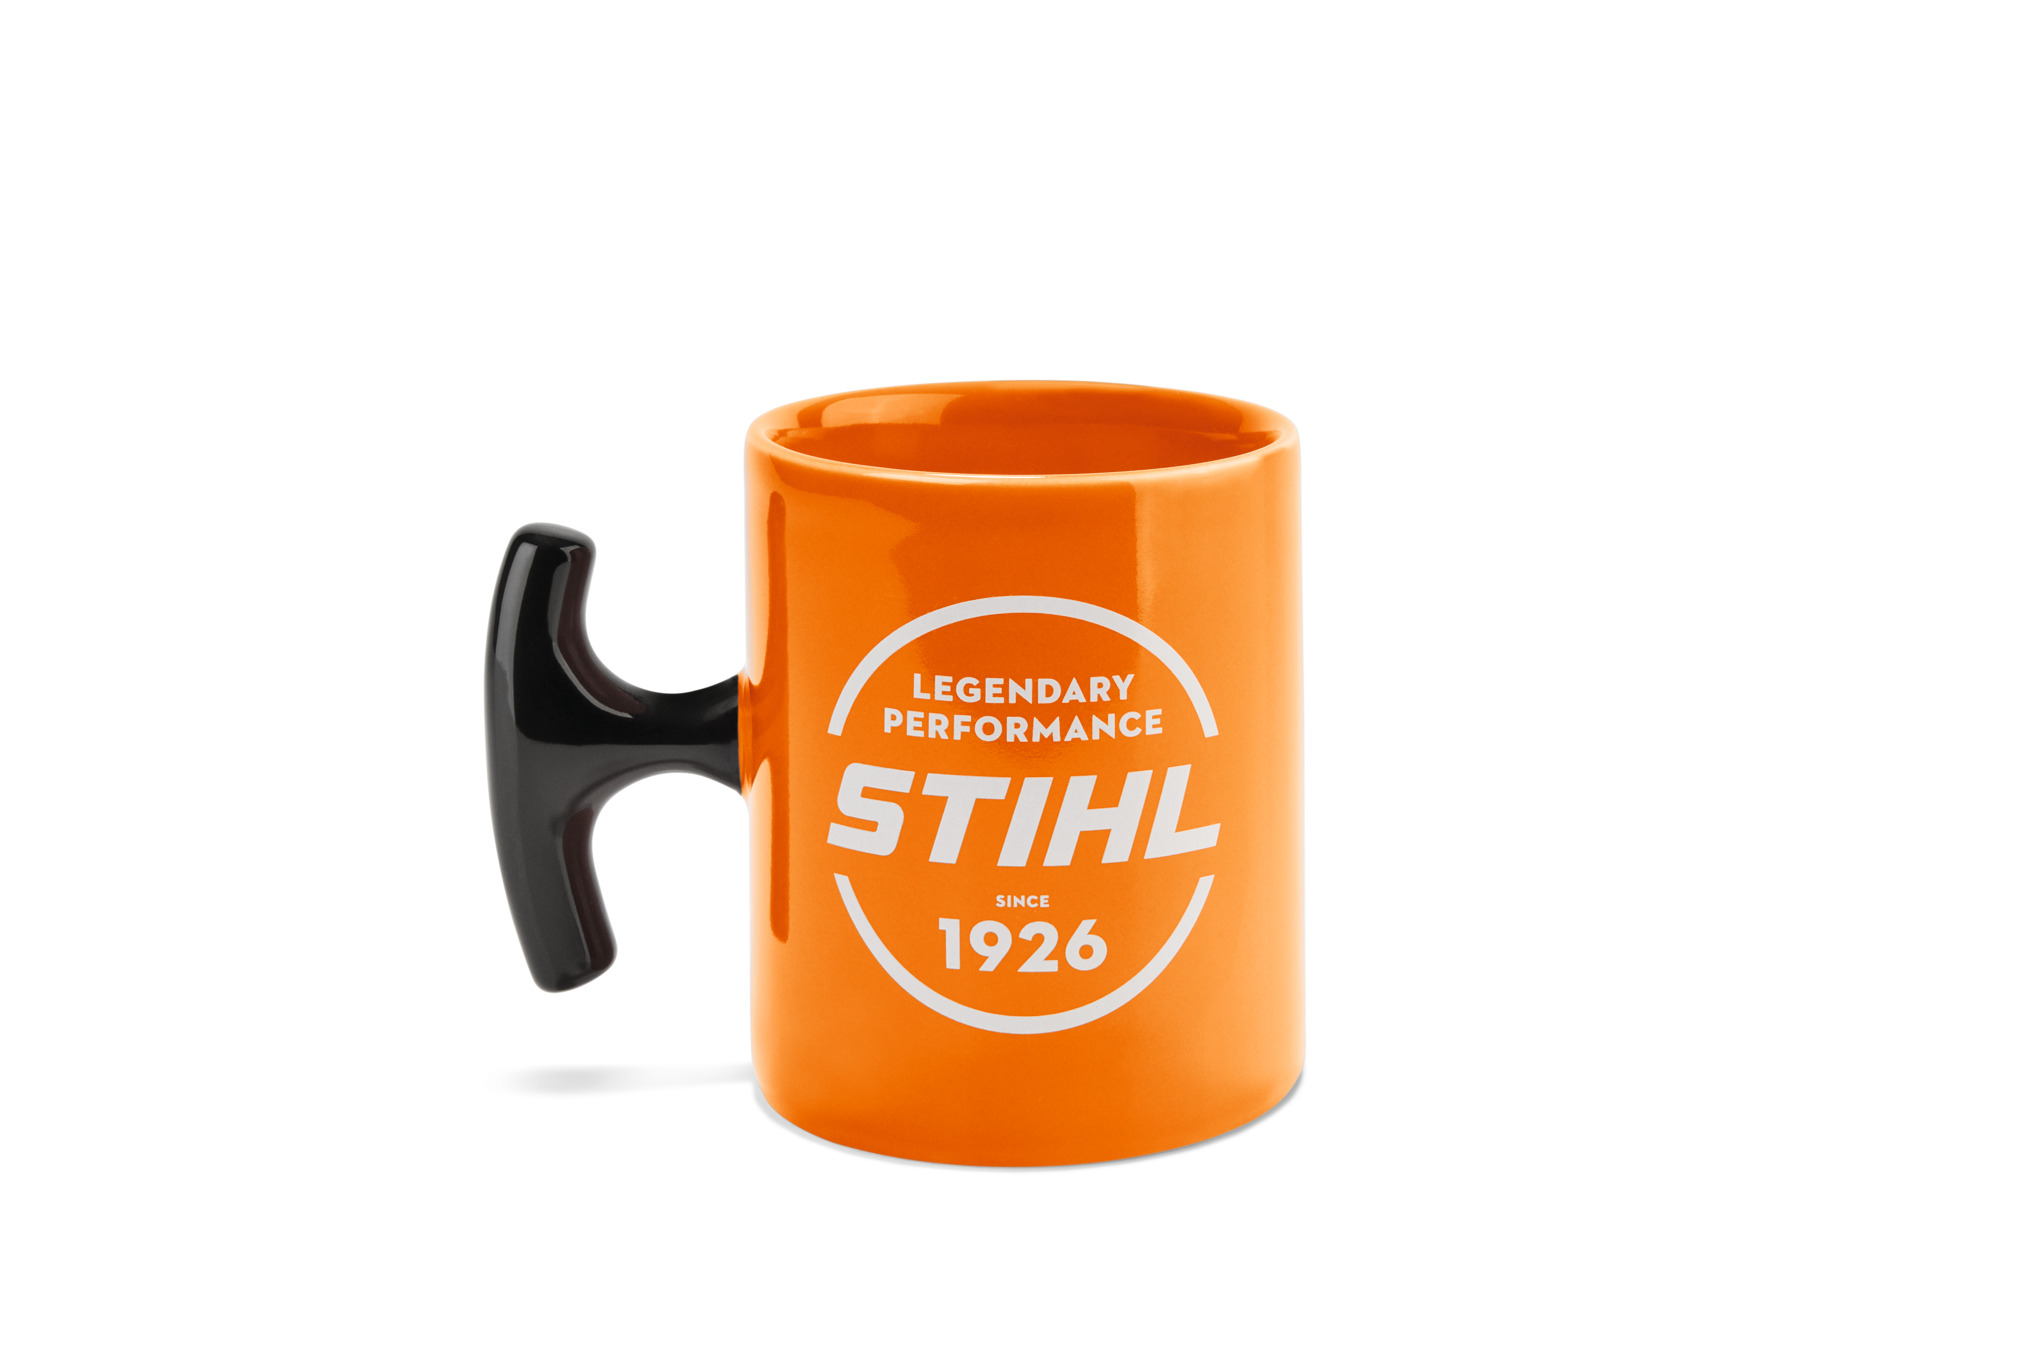 STIHL starter-grip mug